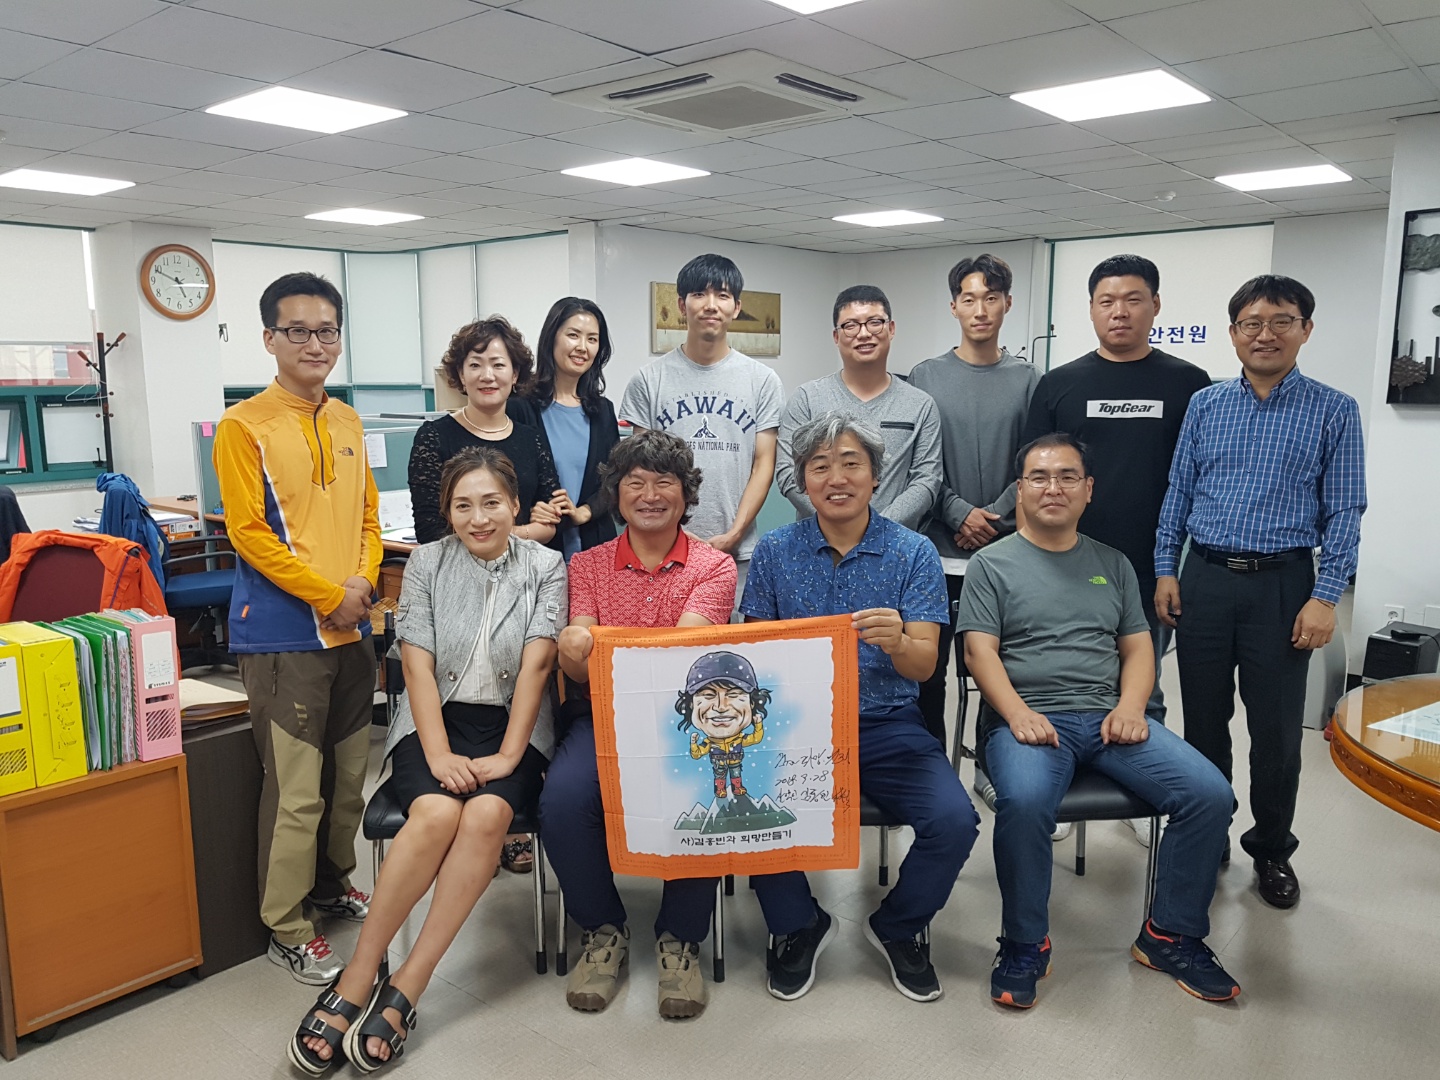 김홍빈 등반가 방문기념 (2018.09월)